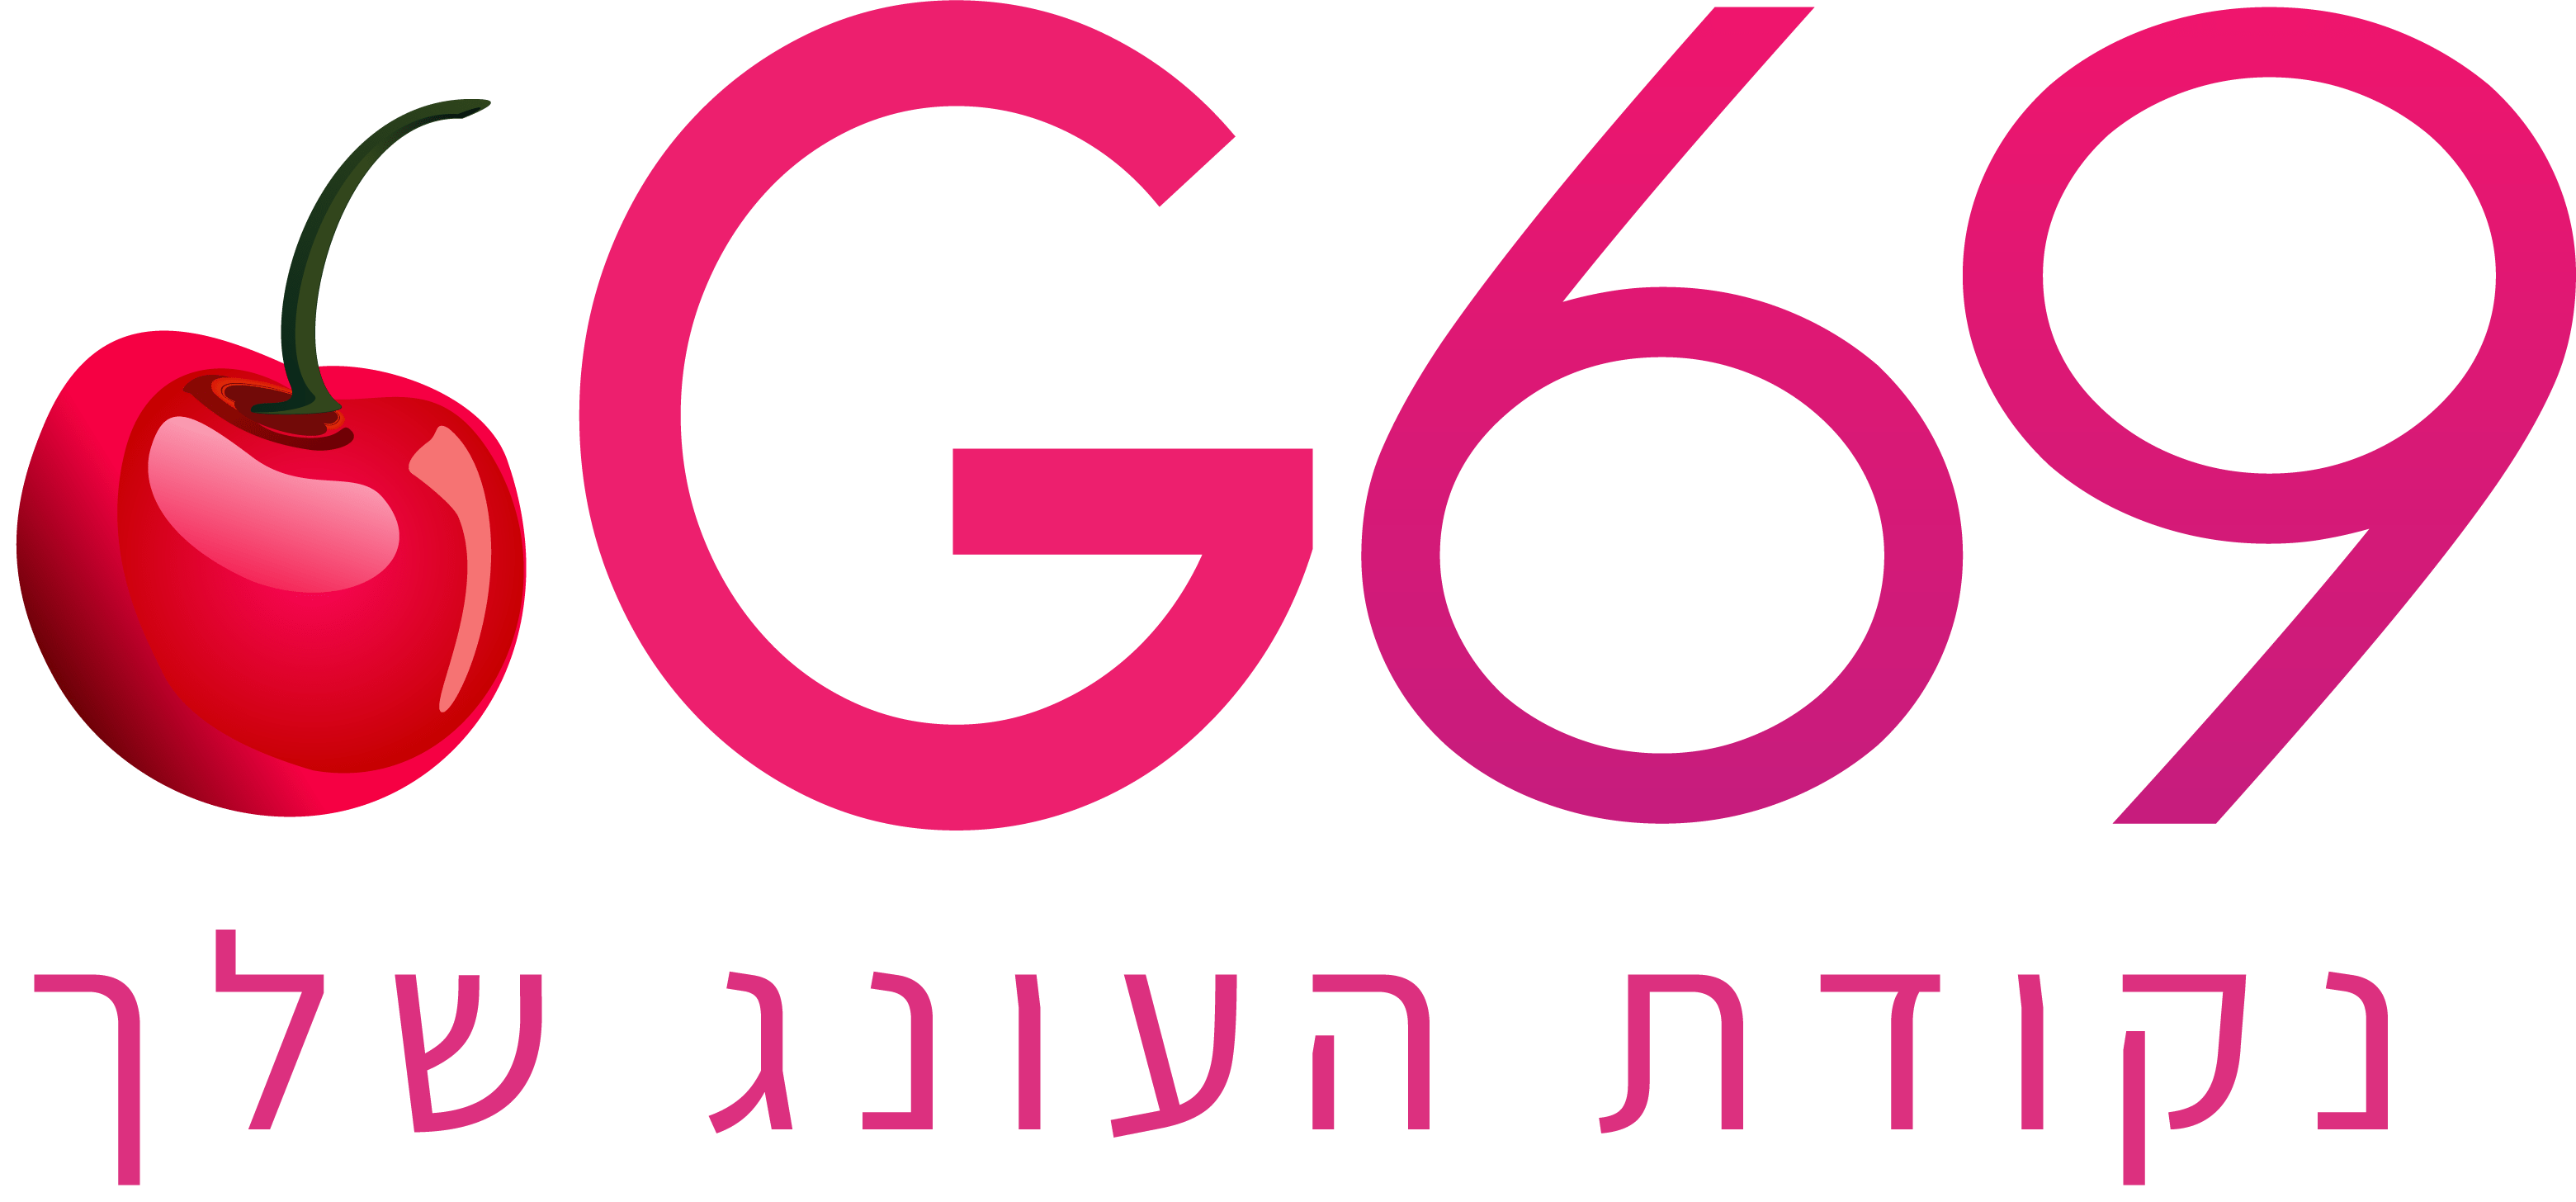 G69 חנות לאביזרי מין